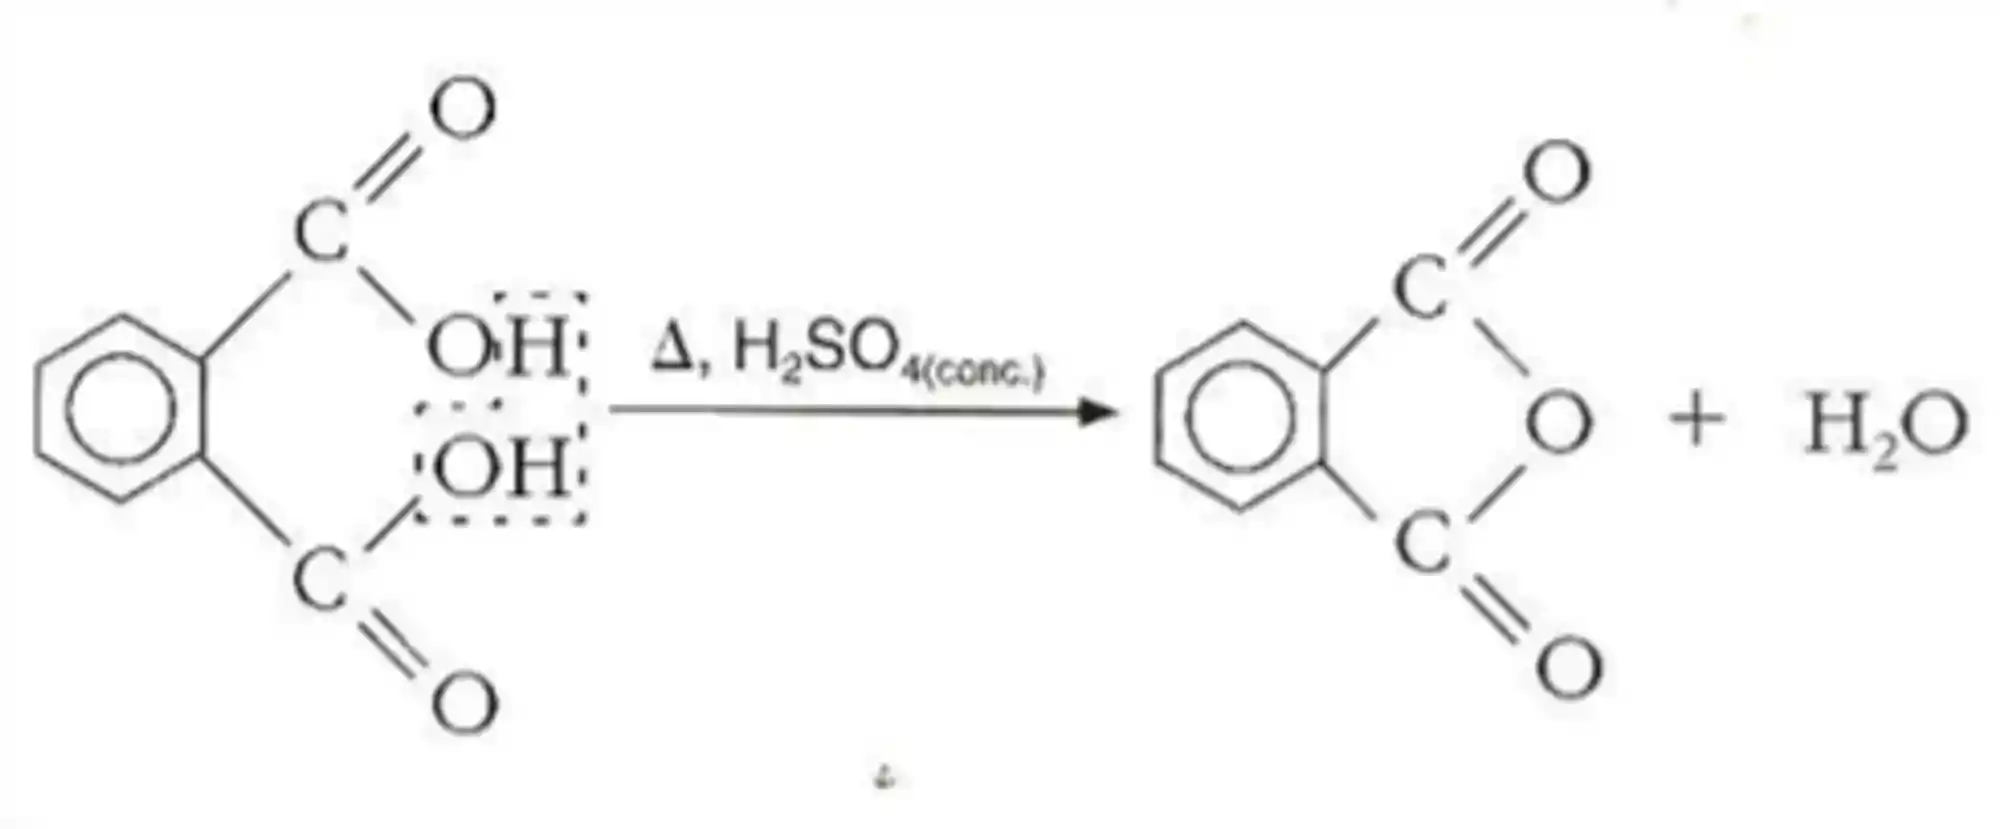 Desidratação intramolecular de um ácido carboxílico